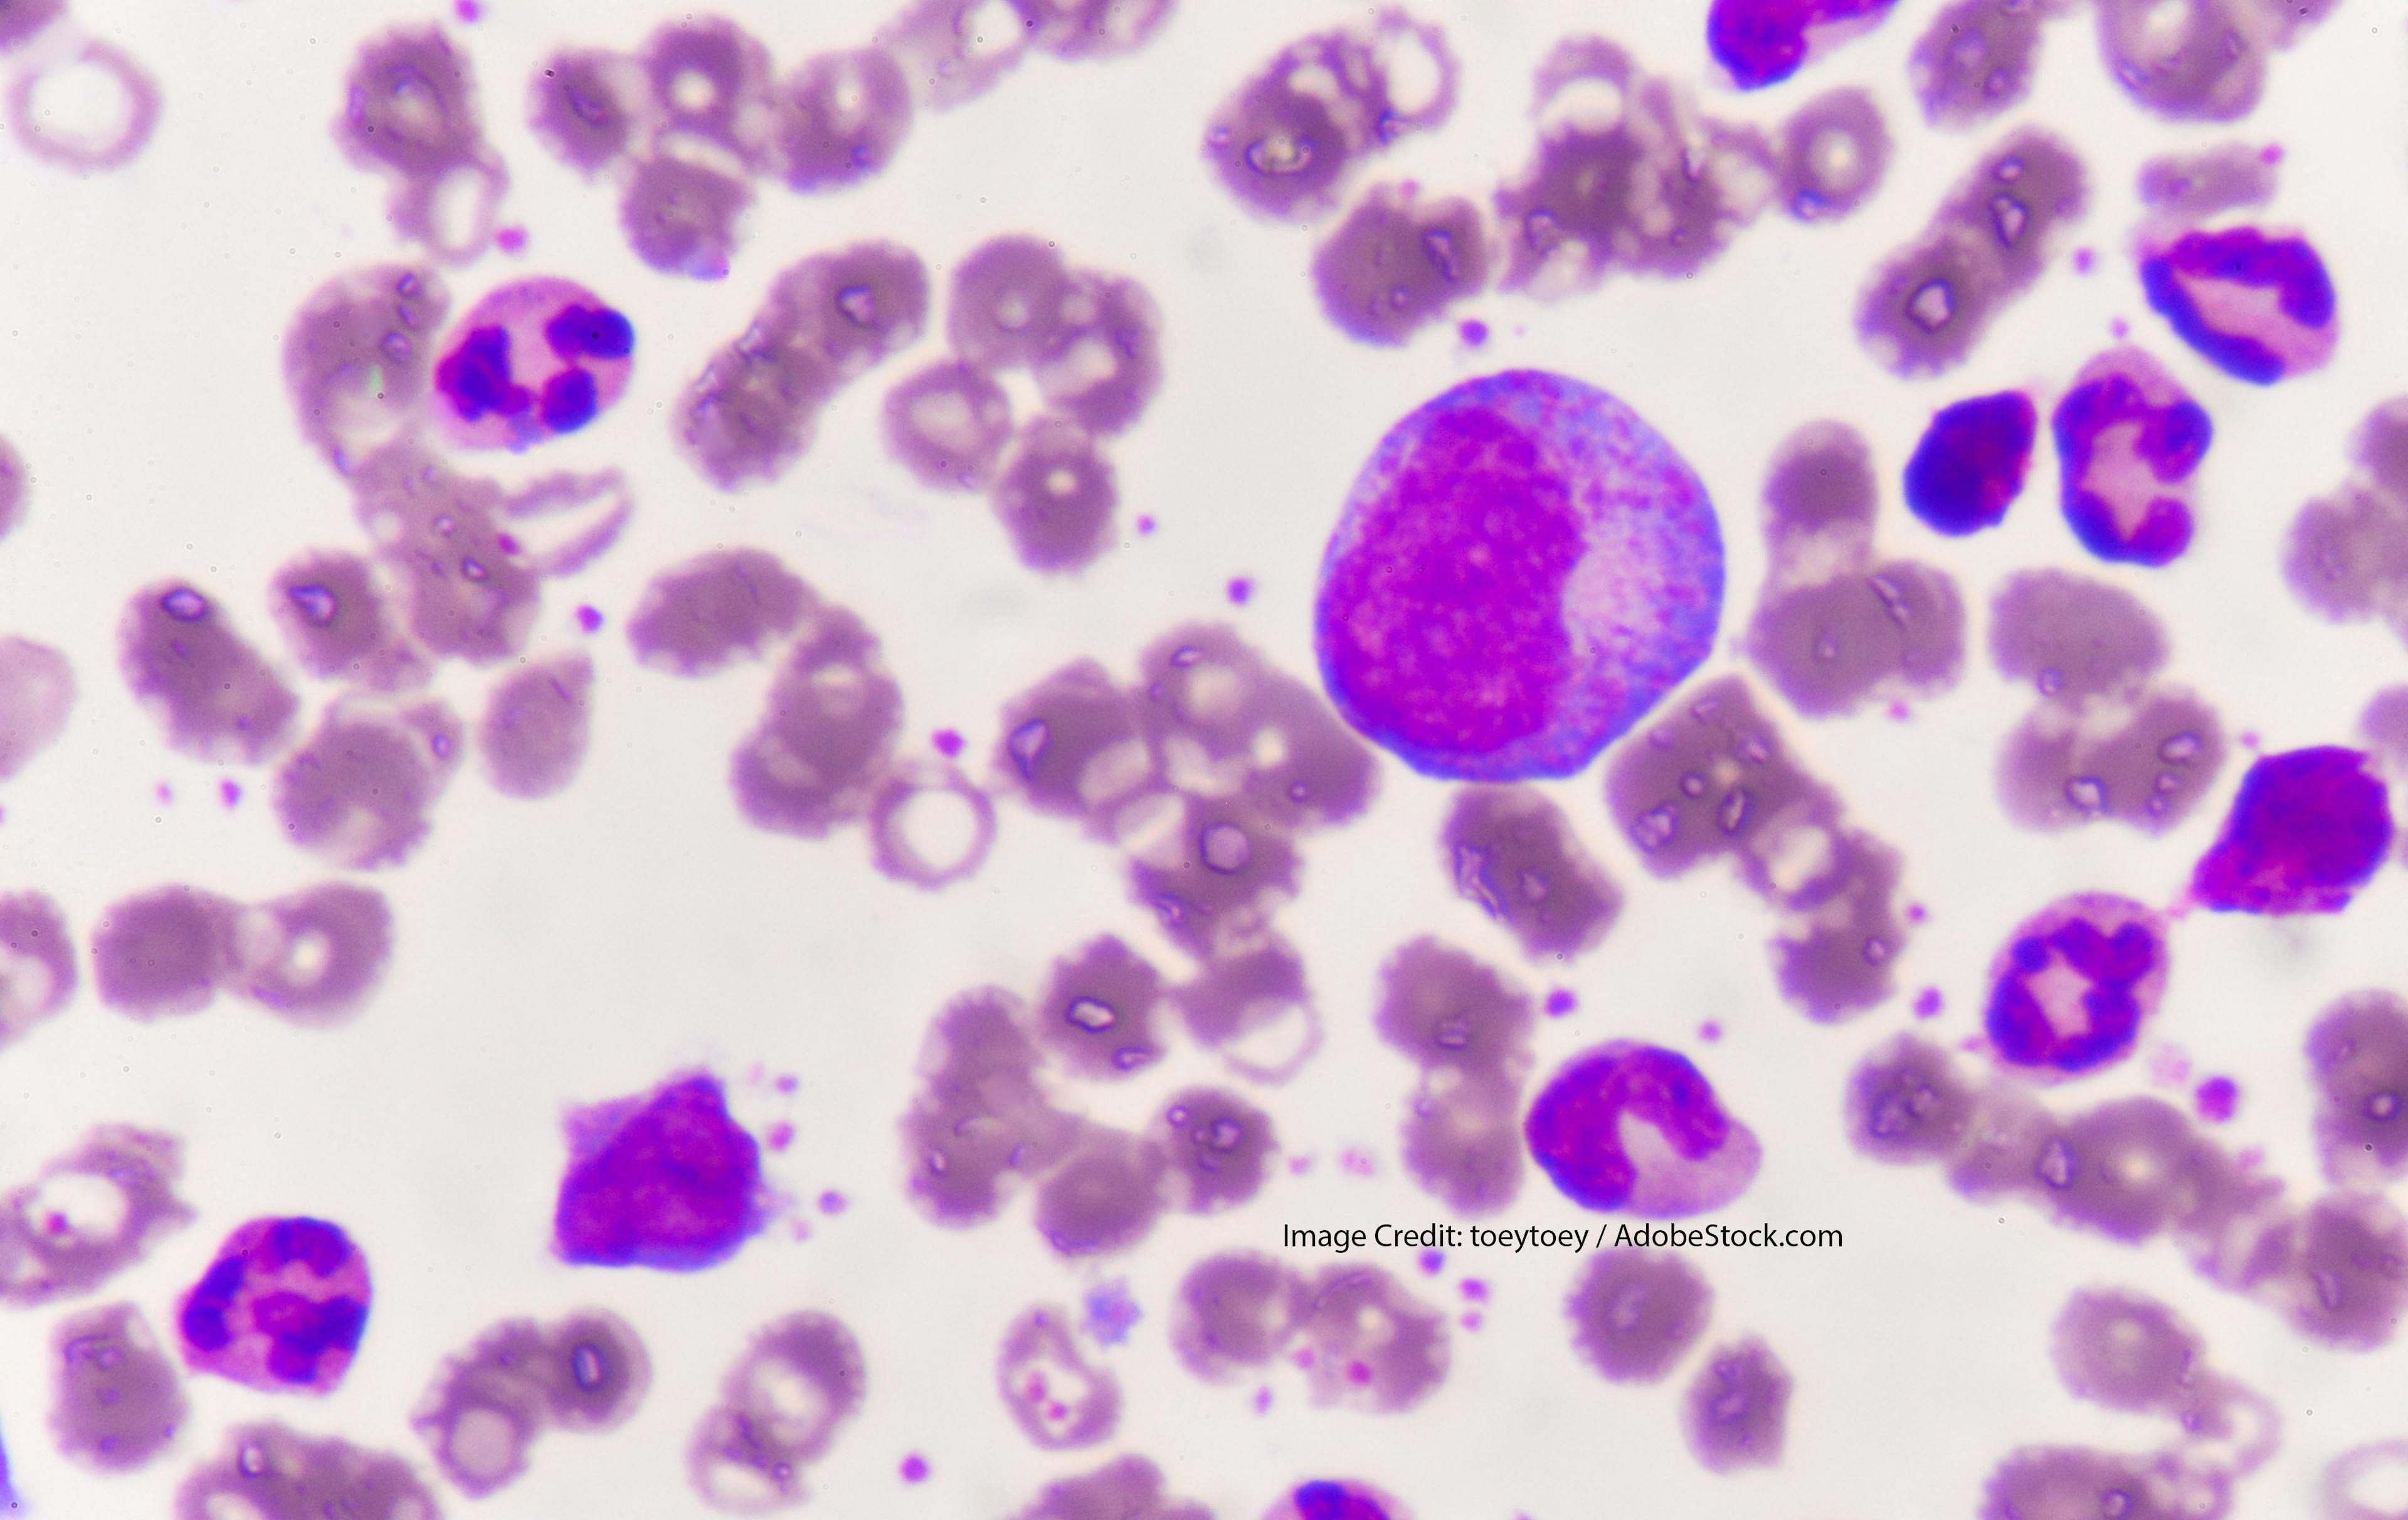 Acute Myeloid Leukemia and EVI1 (MECOM)